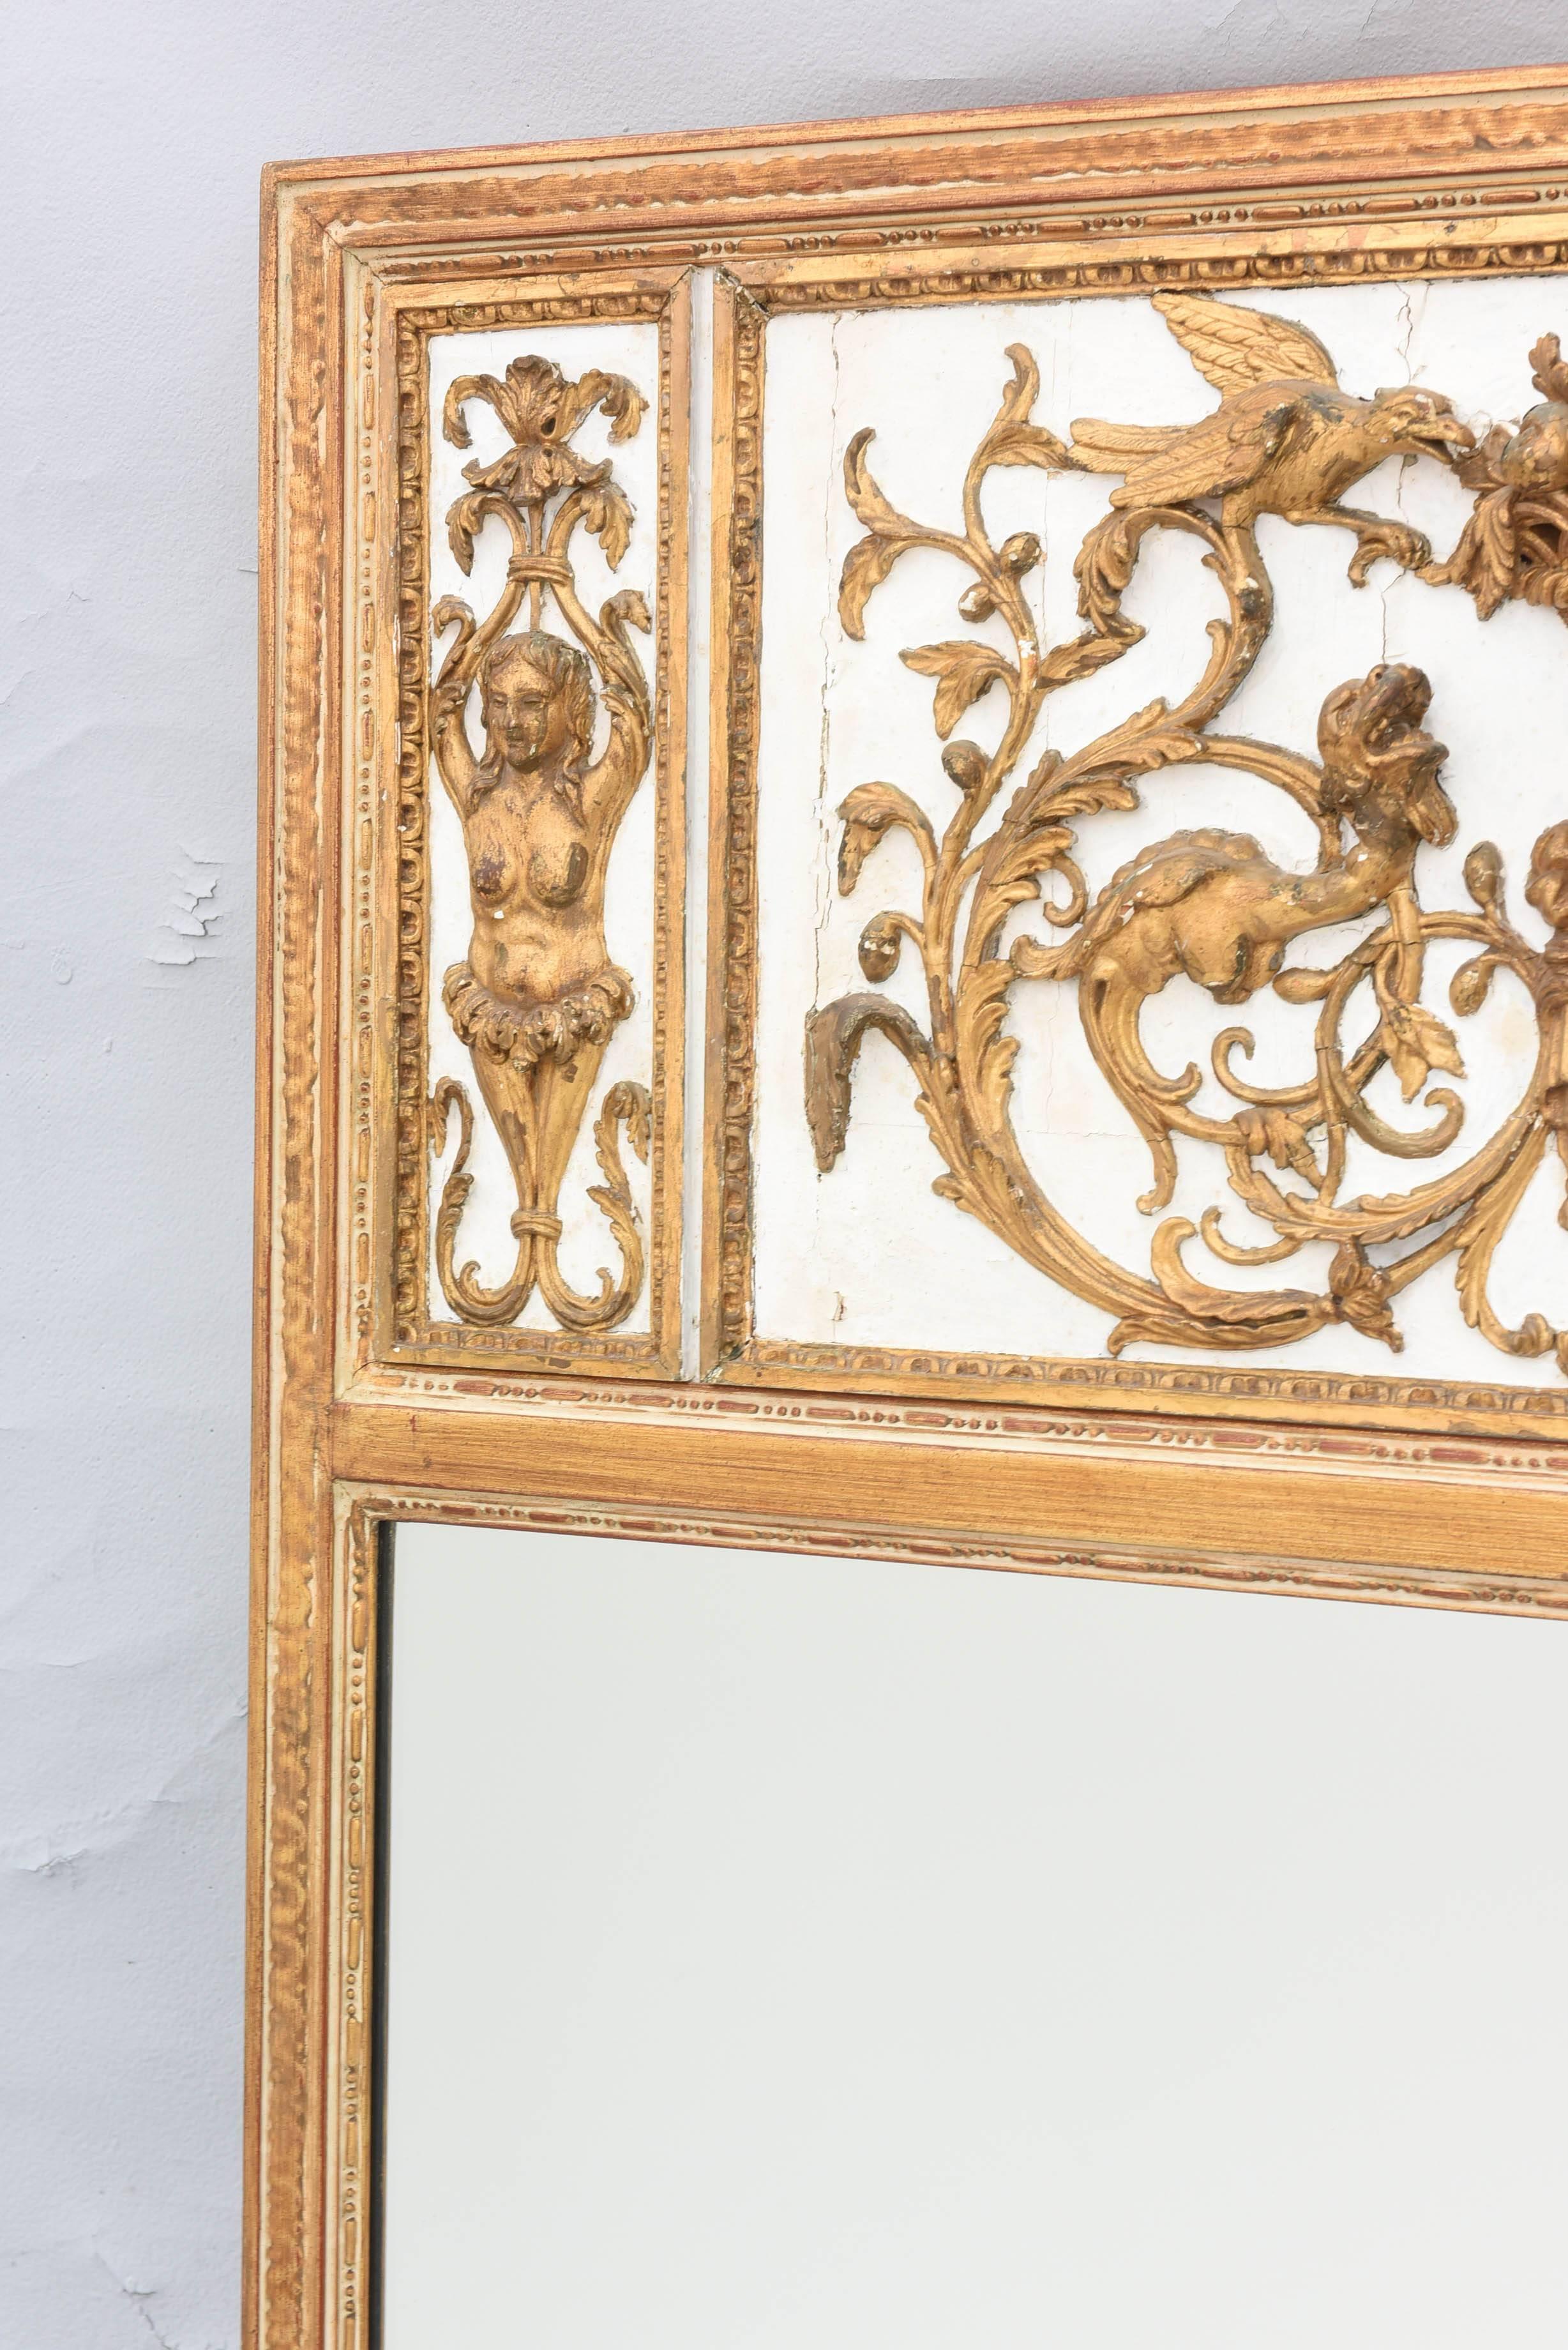 Miroir Trumeau, son cadre rectangulaire sculpté de godrons et de perles, surmonté d'un panneau du XVIIIe siècle, décoré de sculptures classiques élaborées et dorées ; le panneau central est sculpté d'un masque sous un panier rempli de fruits,